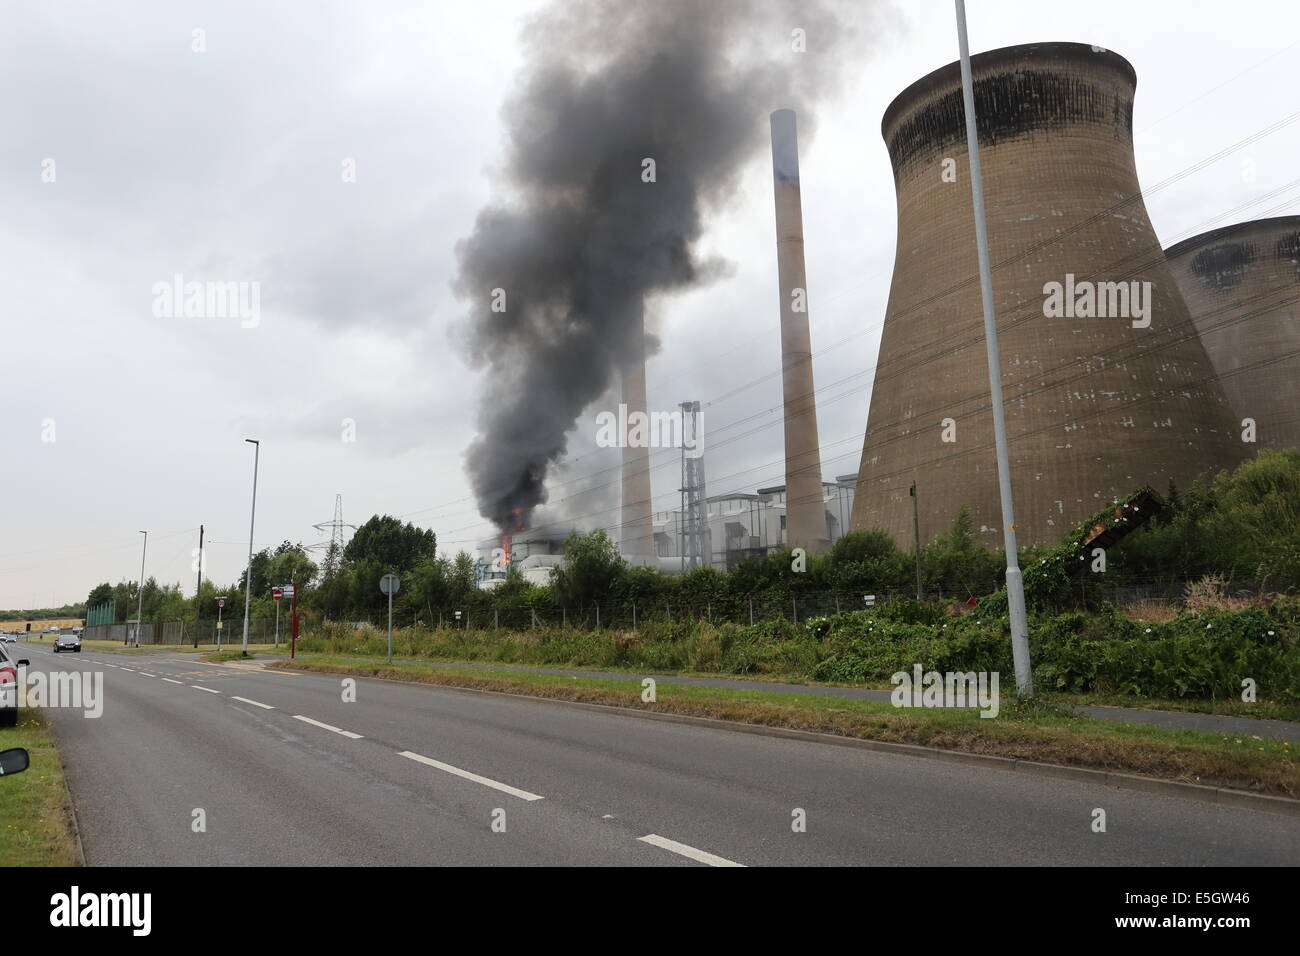 Incendie à Henrichenburg shiplift C thermique au charbon West Yorkshire UK Banque D'Images